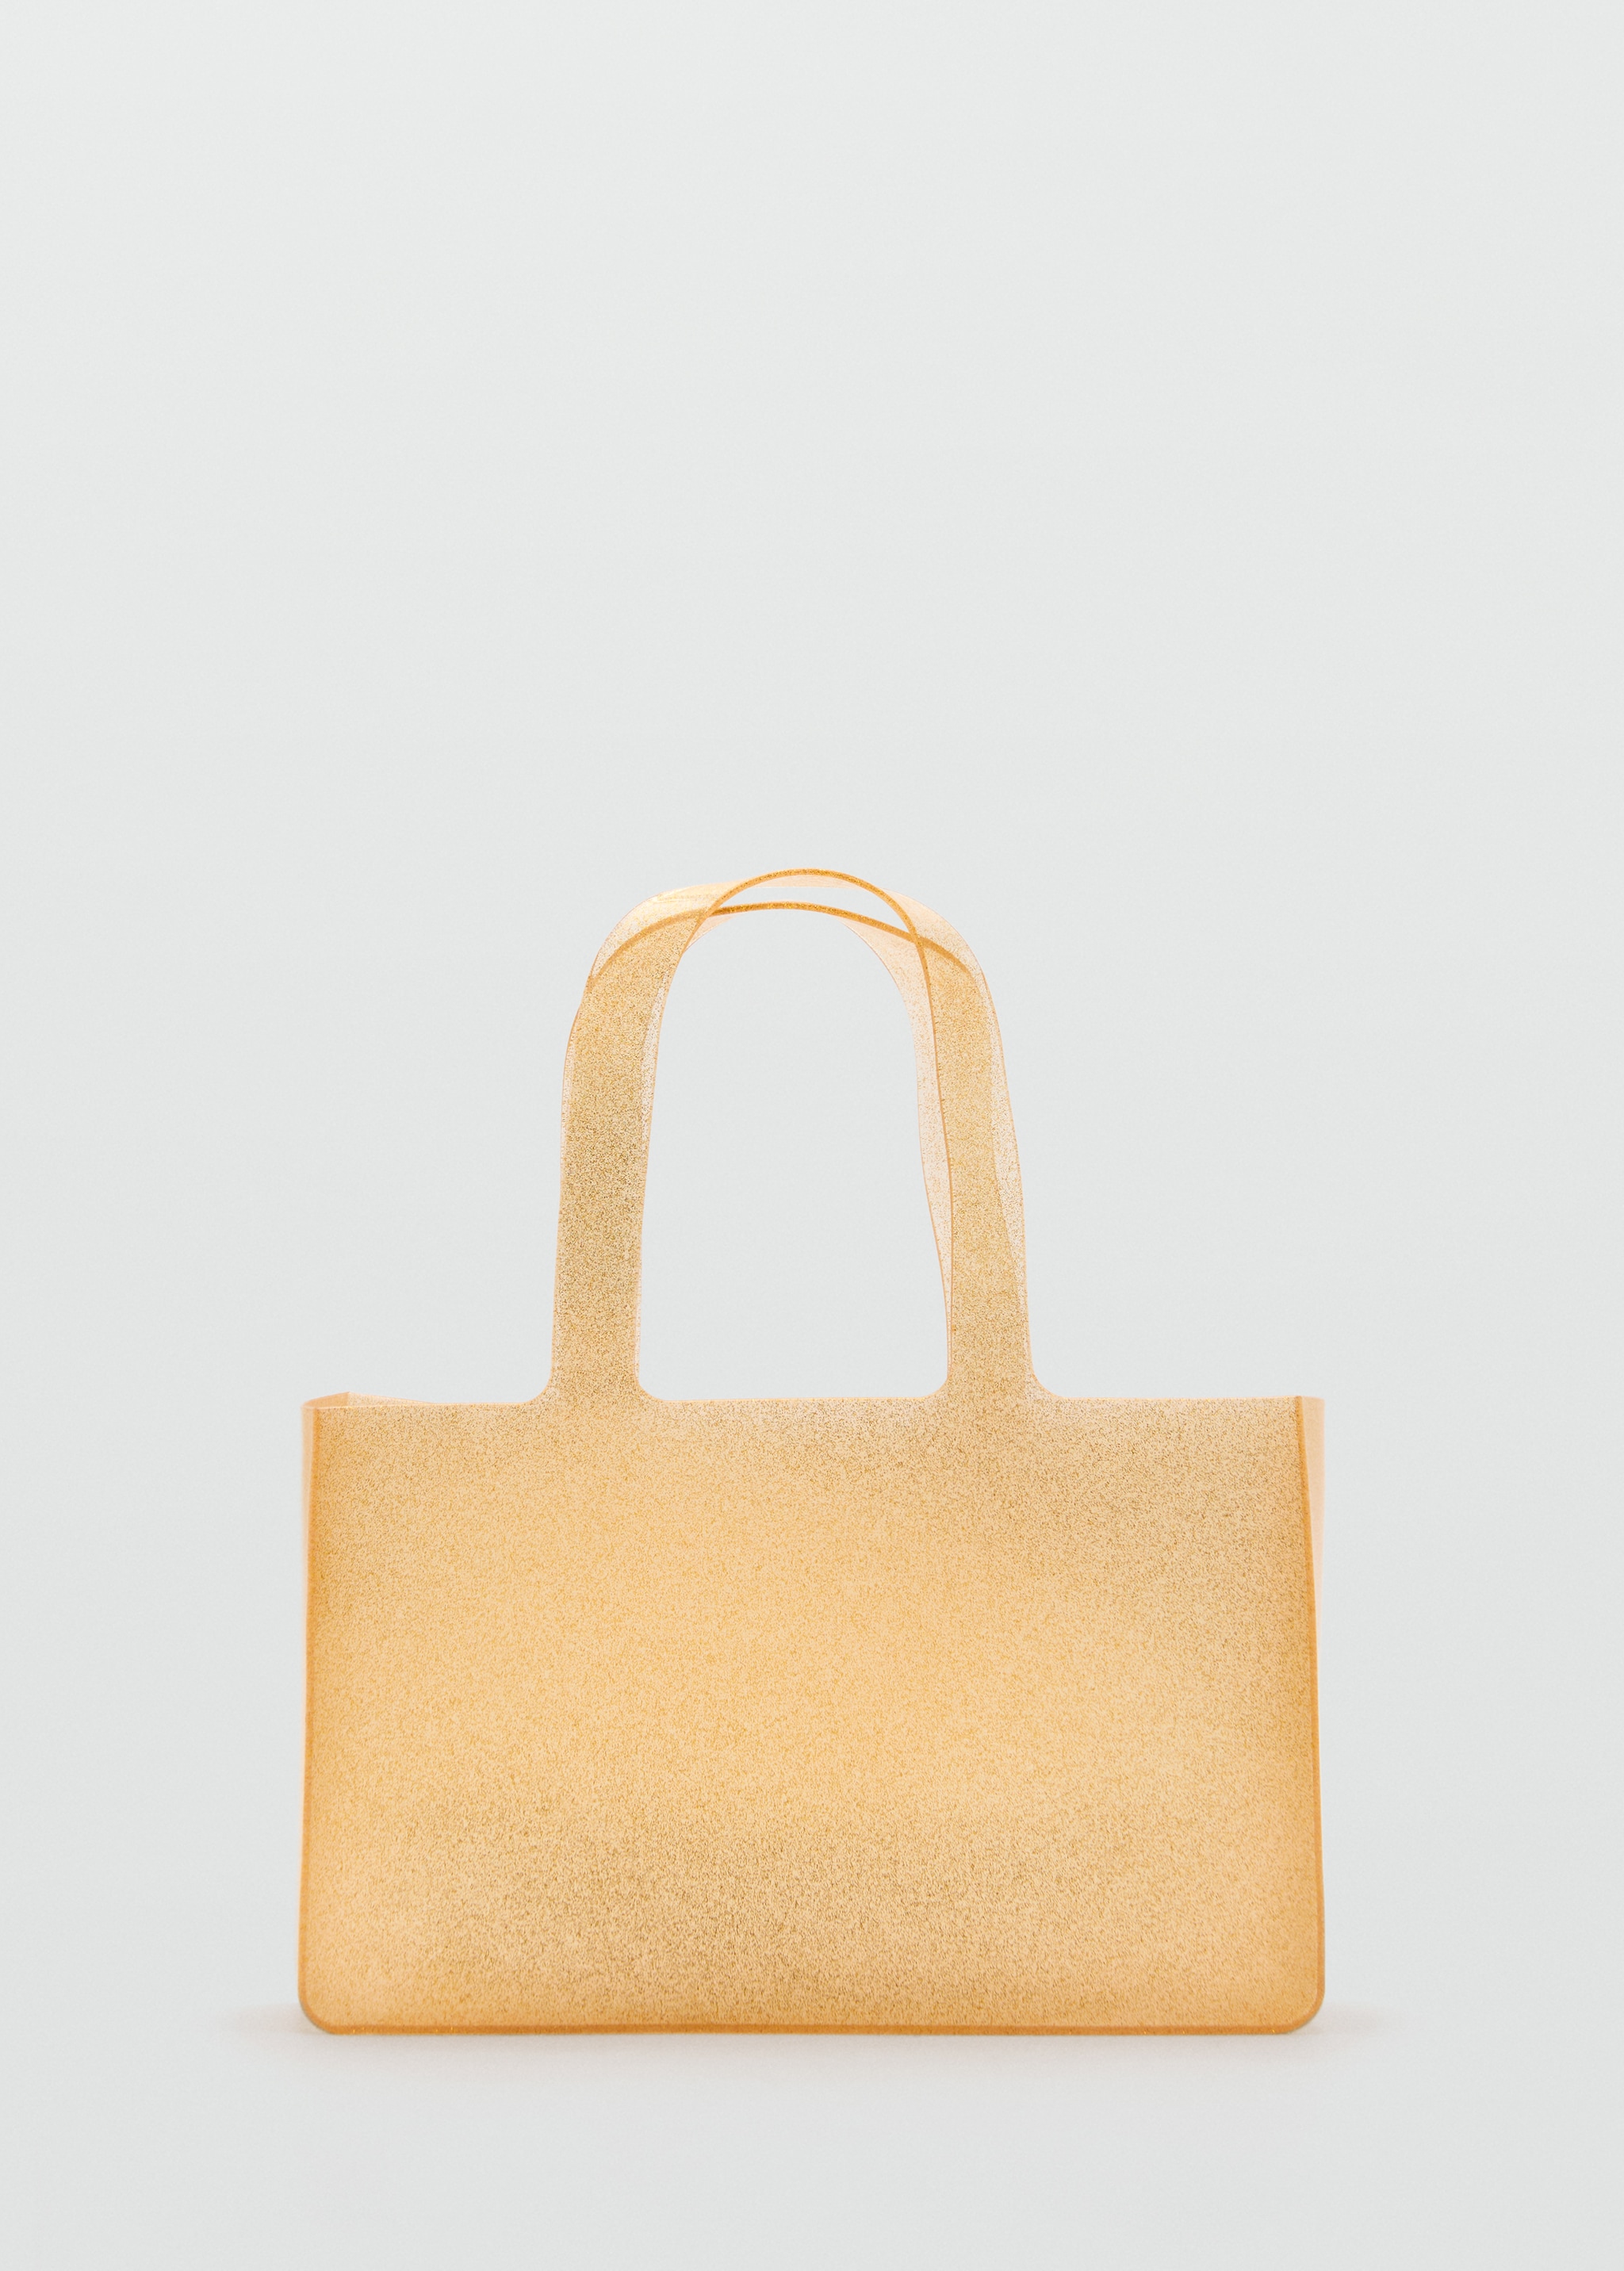 Полупрозрачная блестящая сумка - Изделие без модели